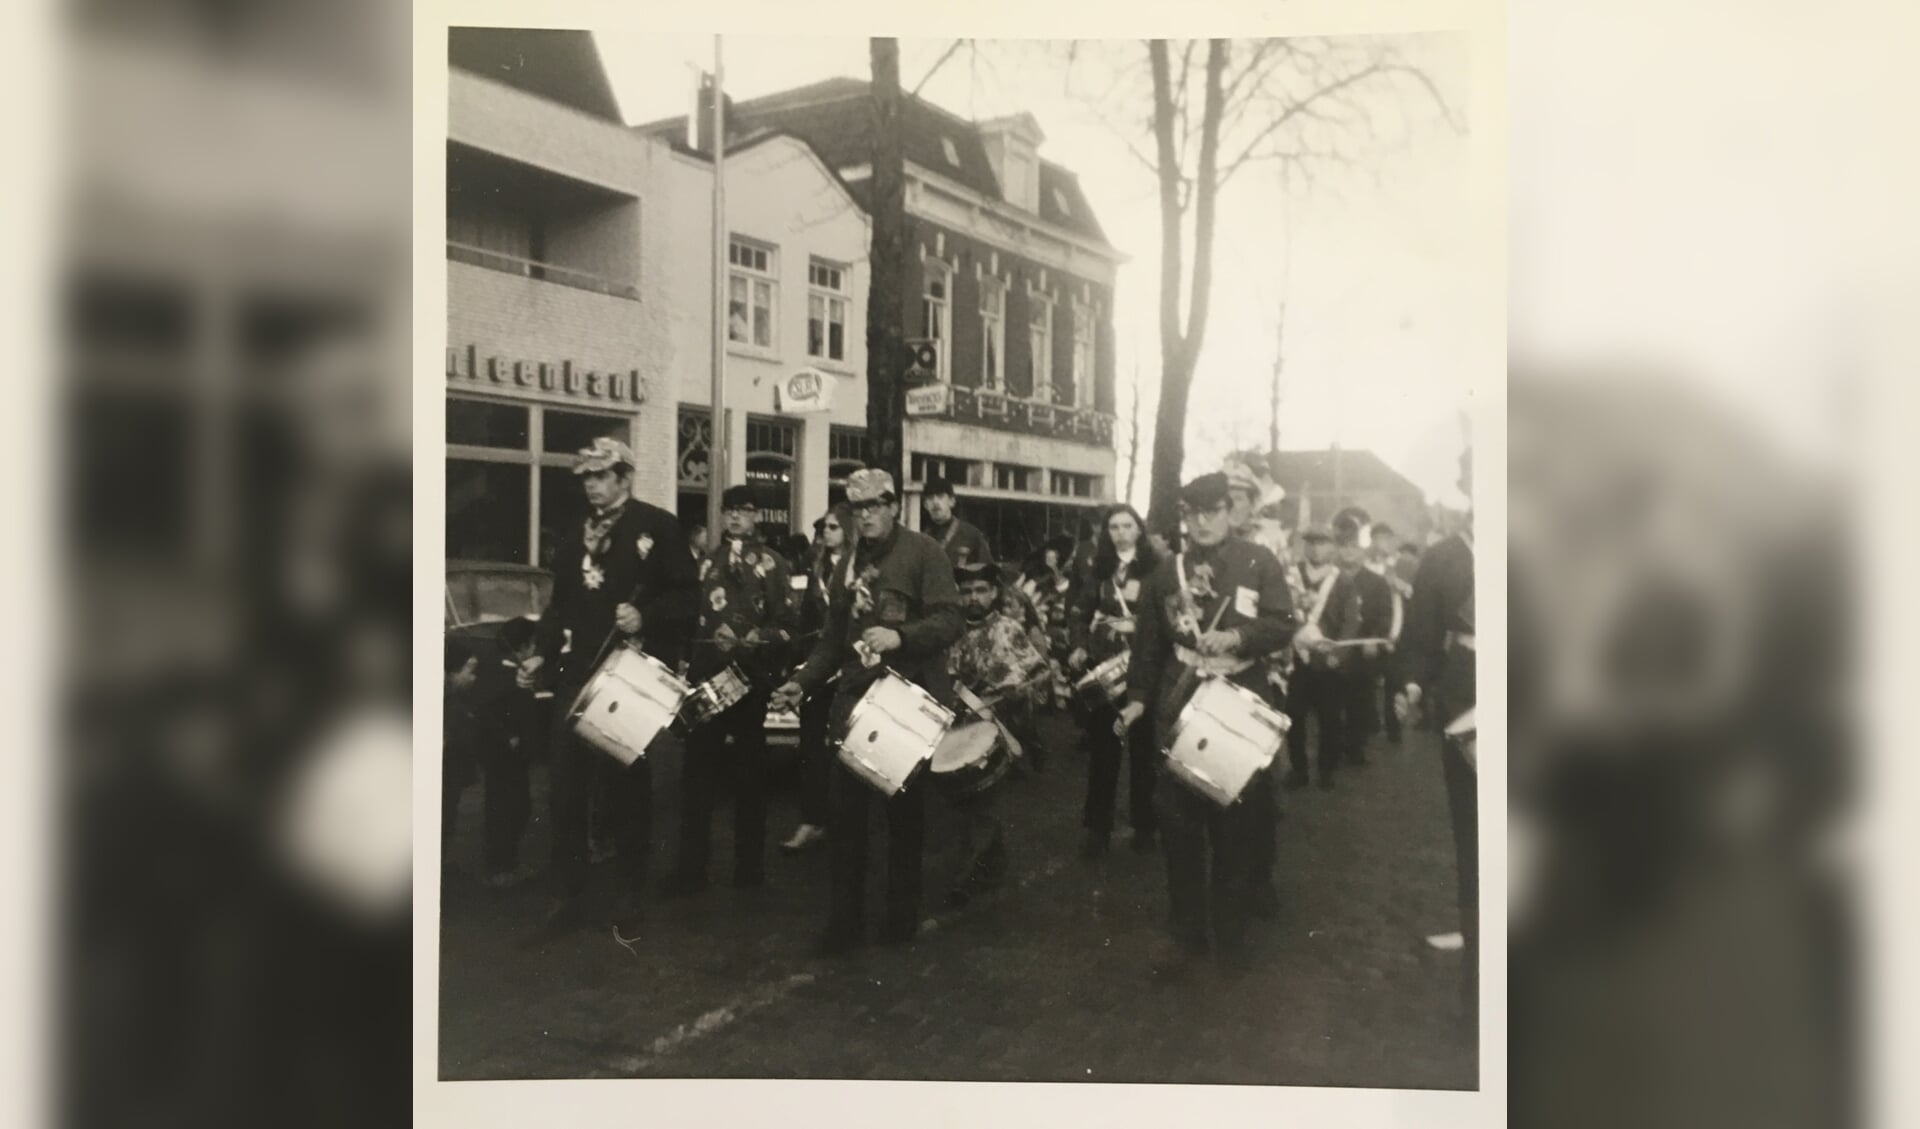 Harmonie Sint Antonius carnaval 1971. Vooraan: Jan Sijbers, Piet van de Sande, Wim van de Sande Gebouwen links: Boerenleenbank, Cafetaria Bert van de Akker, Muller mode